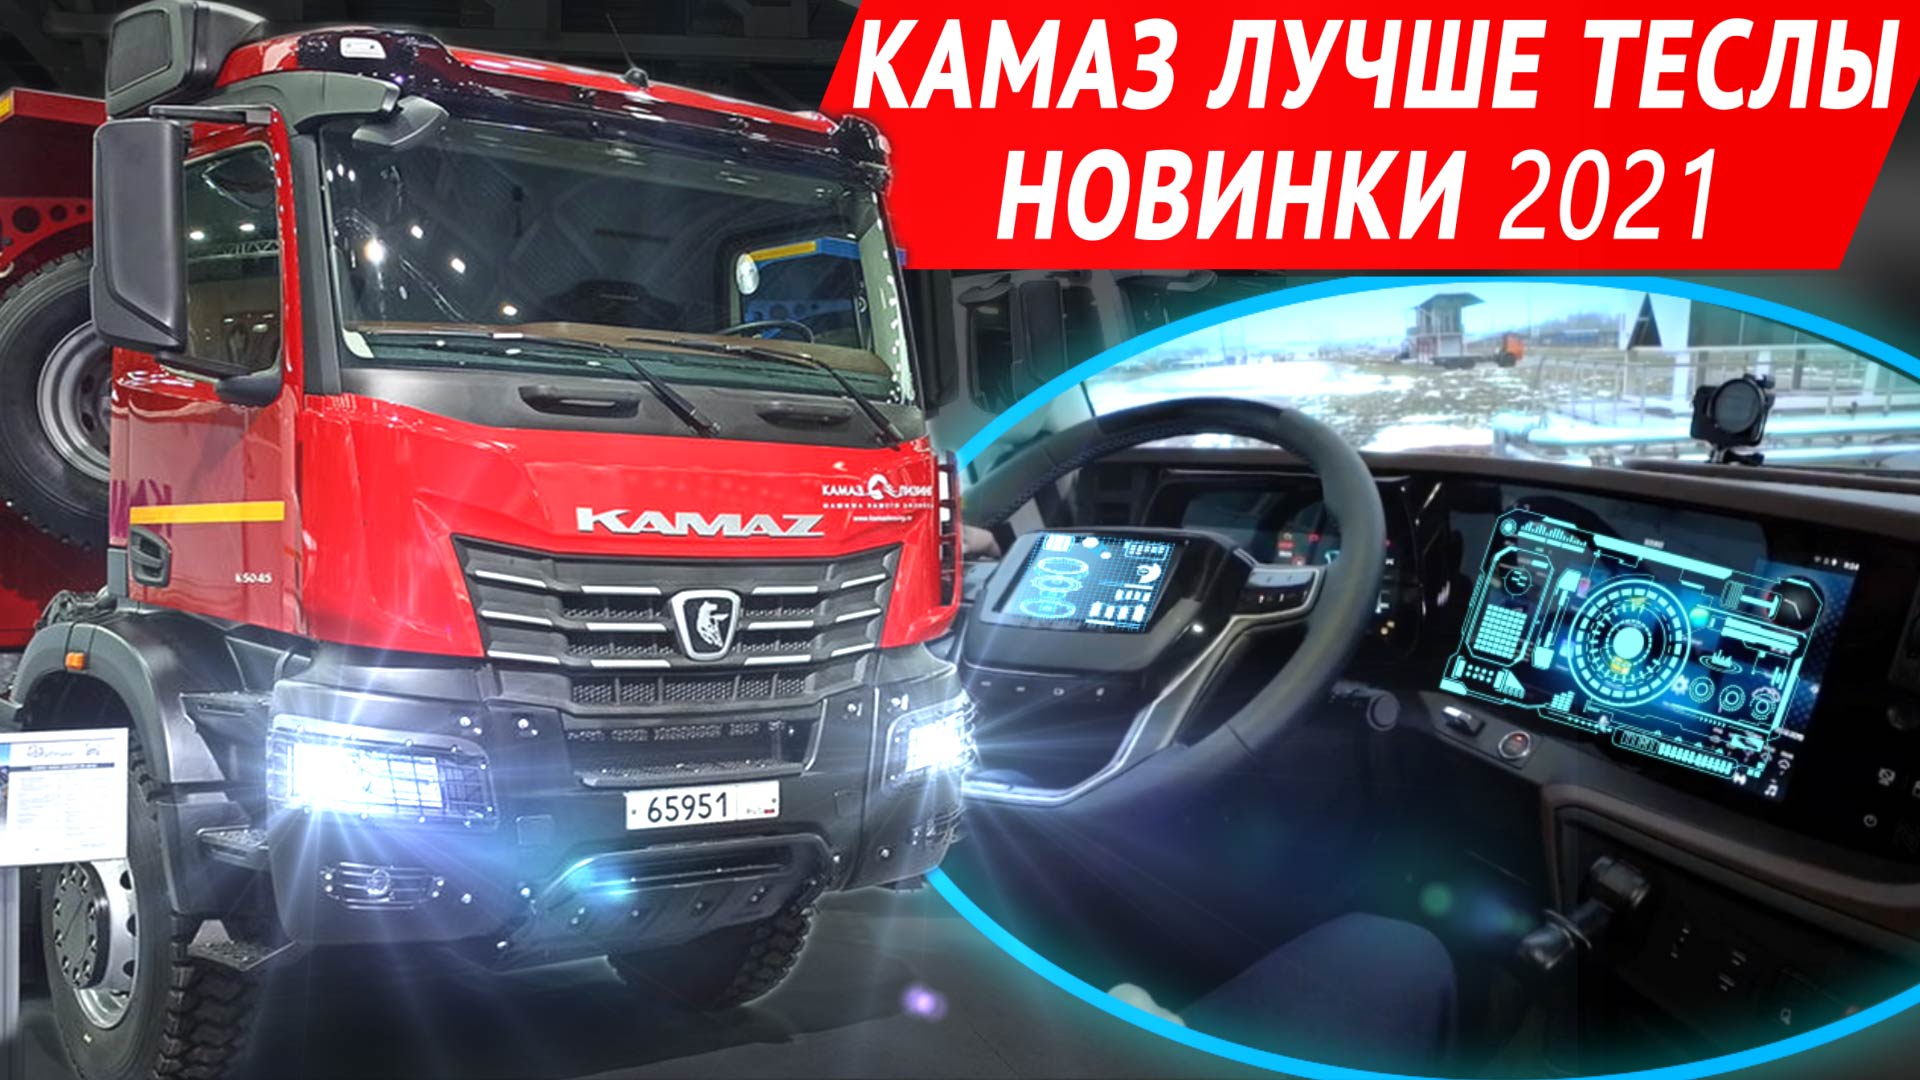 КАМАЗ К6 - экраны, камеры, автопилот и другие новинки Комтранс-2021